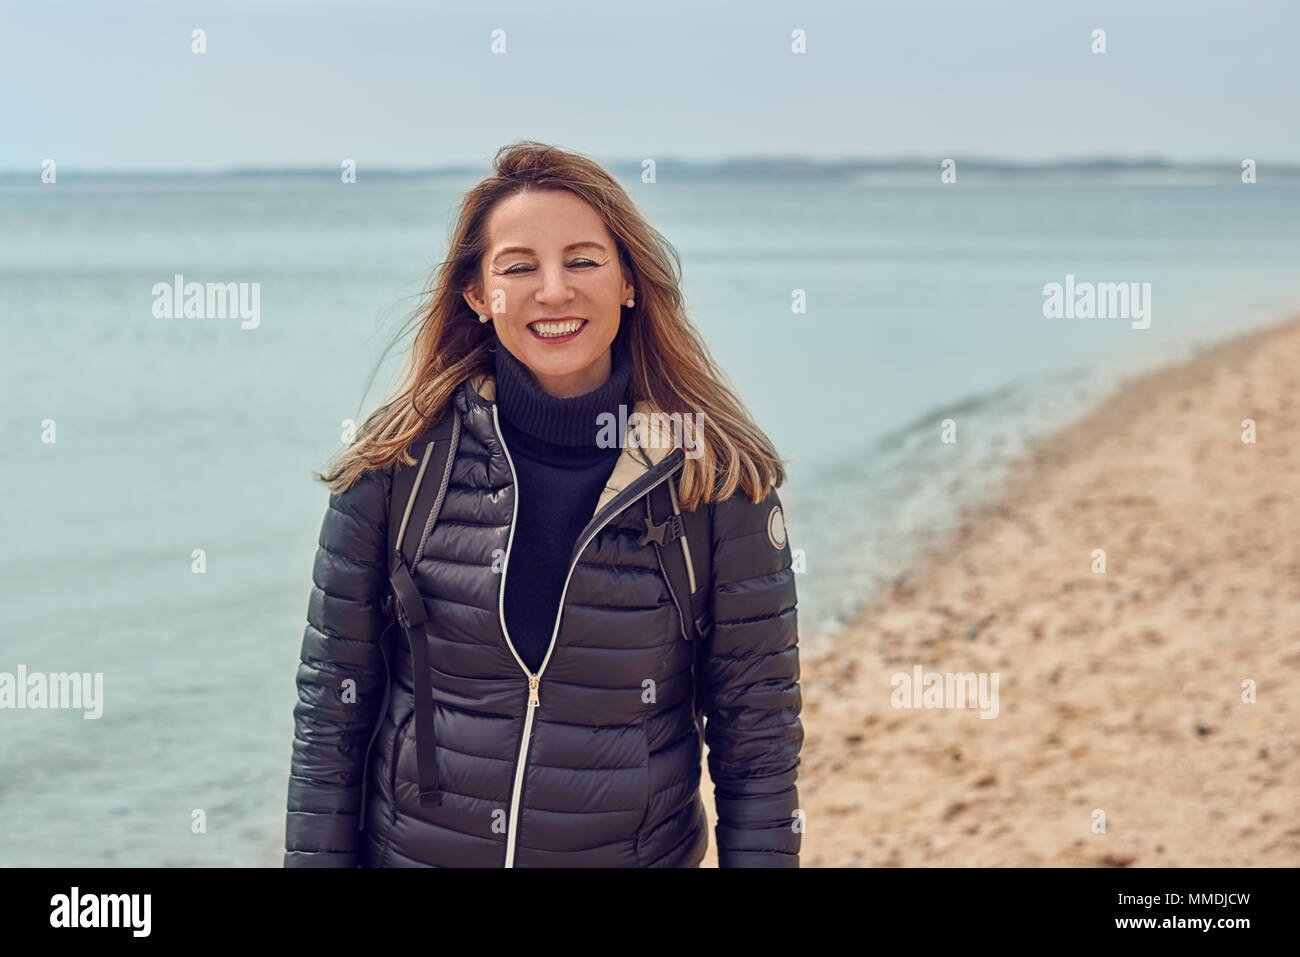 Attraktive Frau zu Fuß am Strand an einem bewölkten Tag trägt einen Rucksack und Jacke anhalten am Rande des Meeres zu lächeln in die Kamera Stockfoto